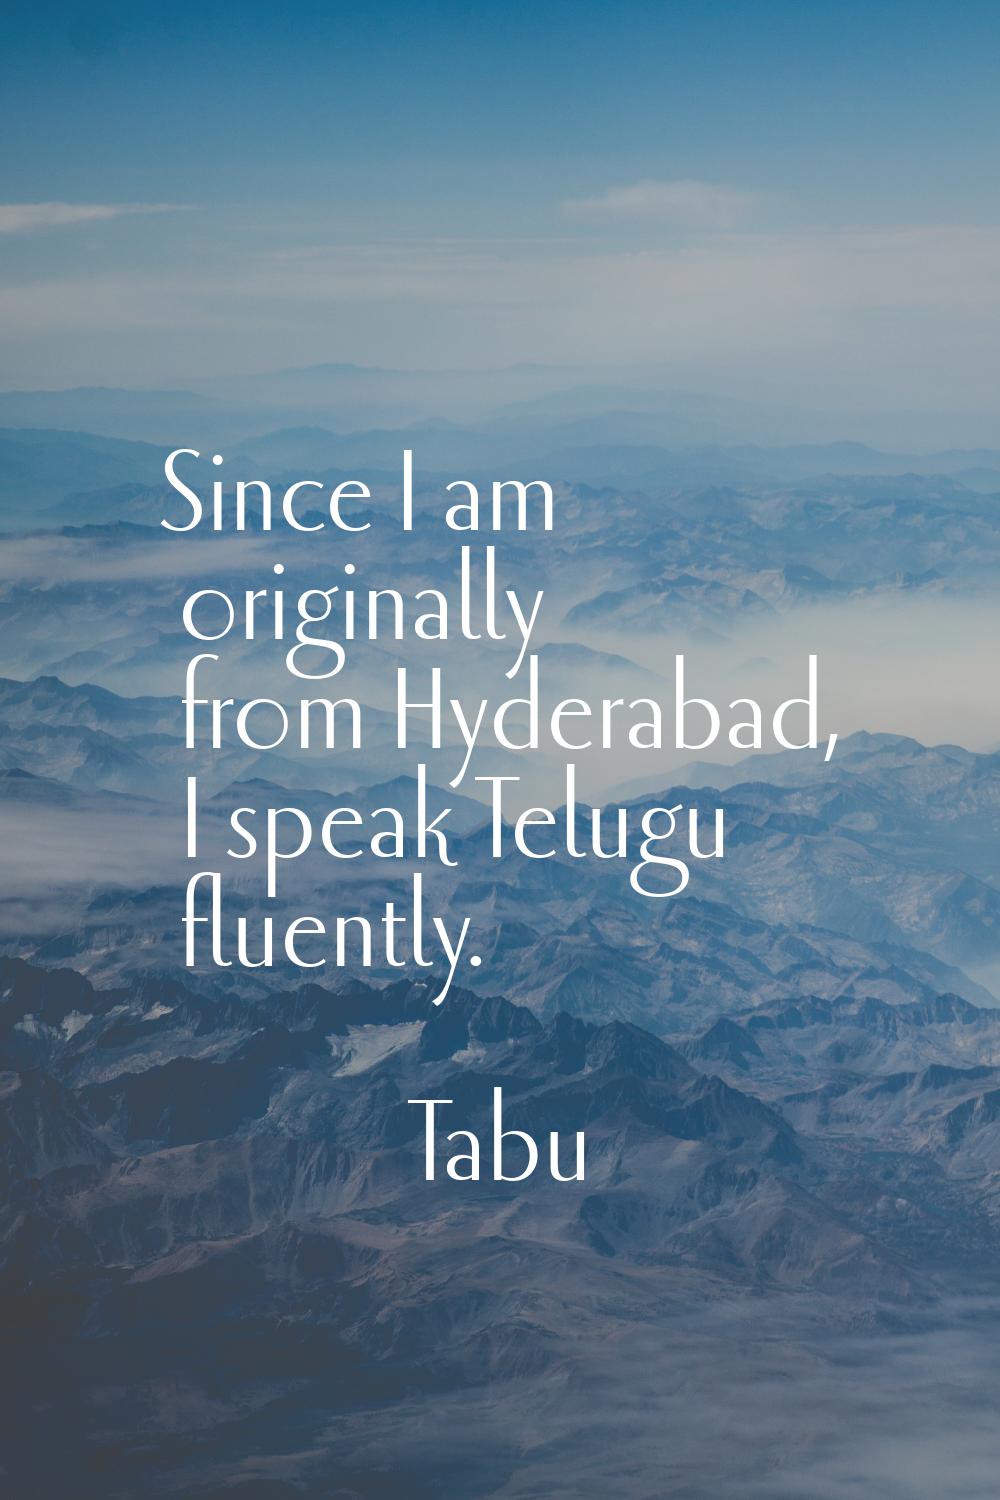 Since I am originally from Hyderabad, I speak Telugu fluently.